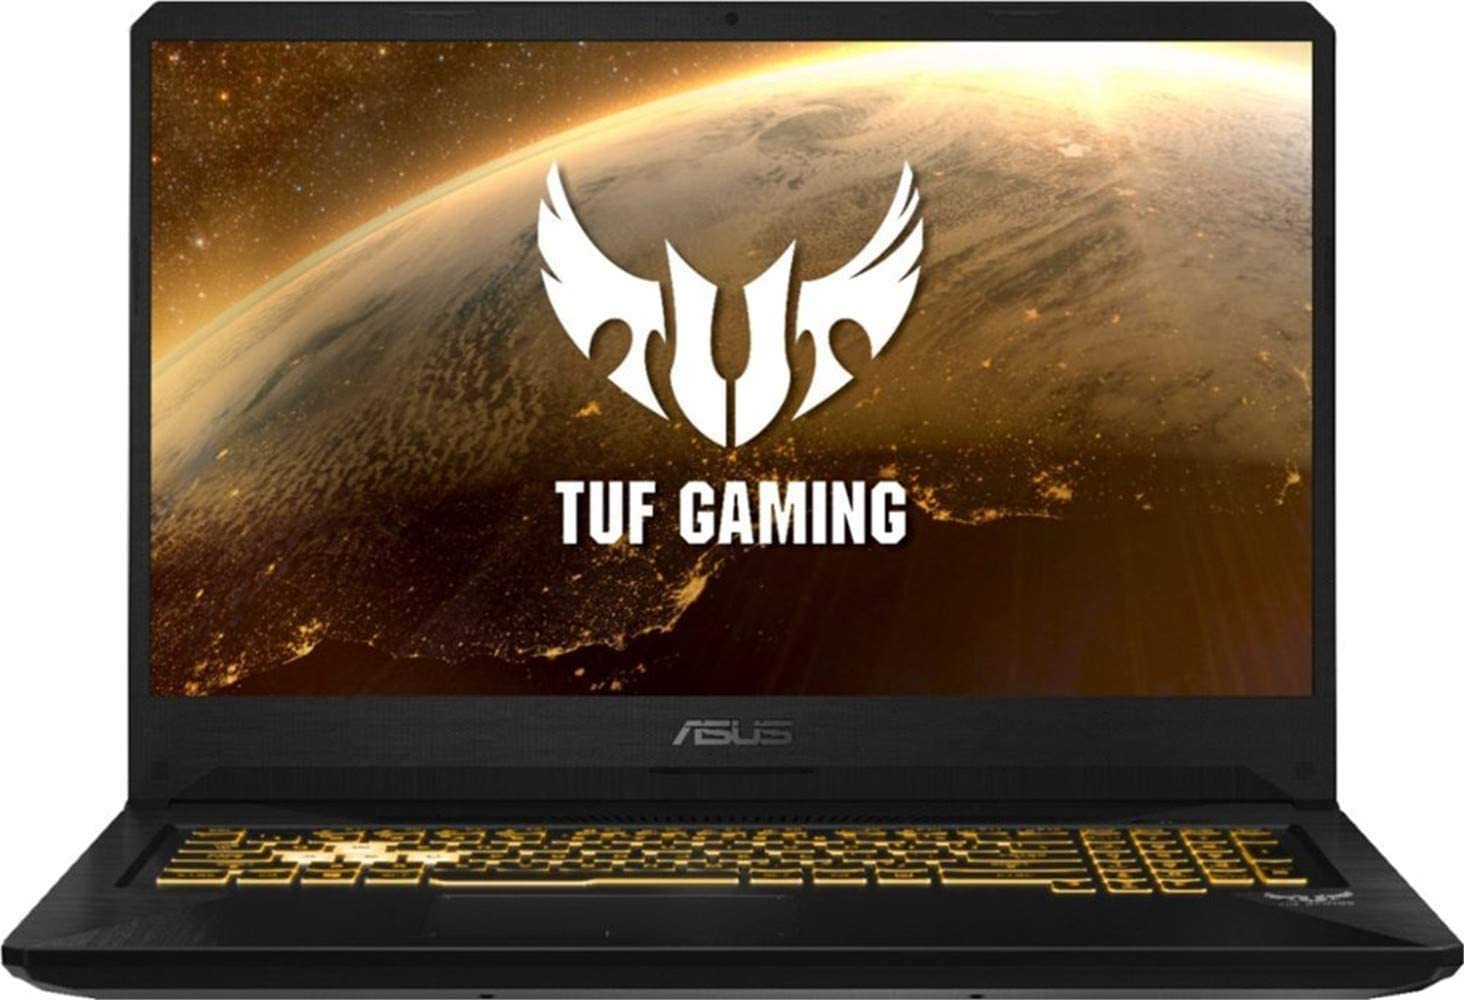  2019 ASUS TUF 17.3" FHD Gaming Laptop